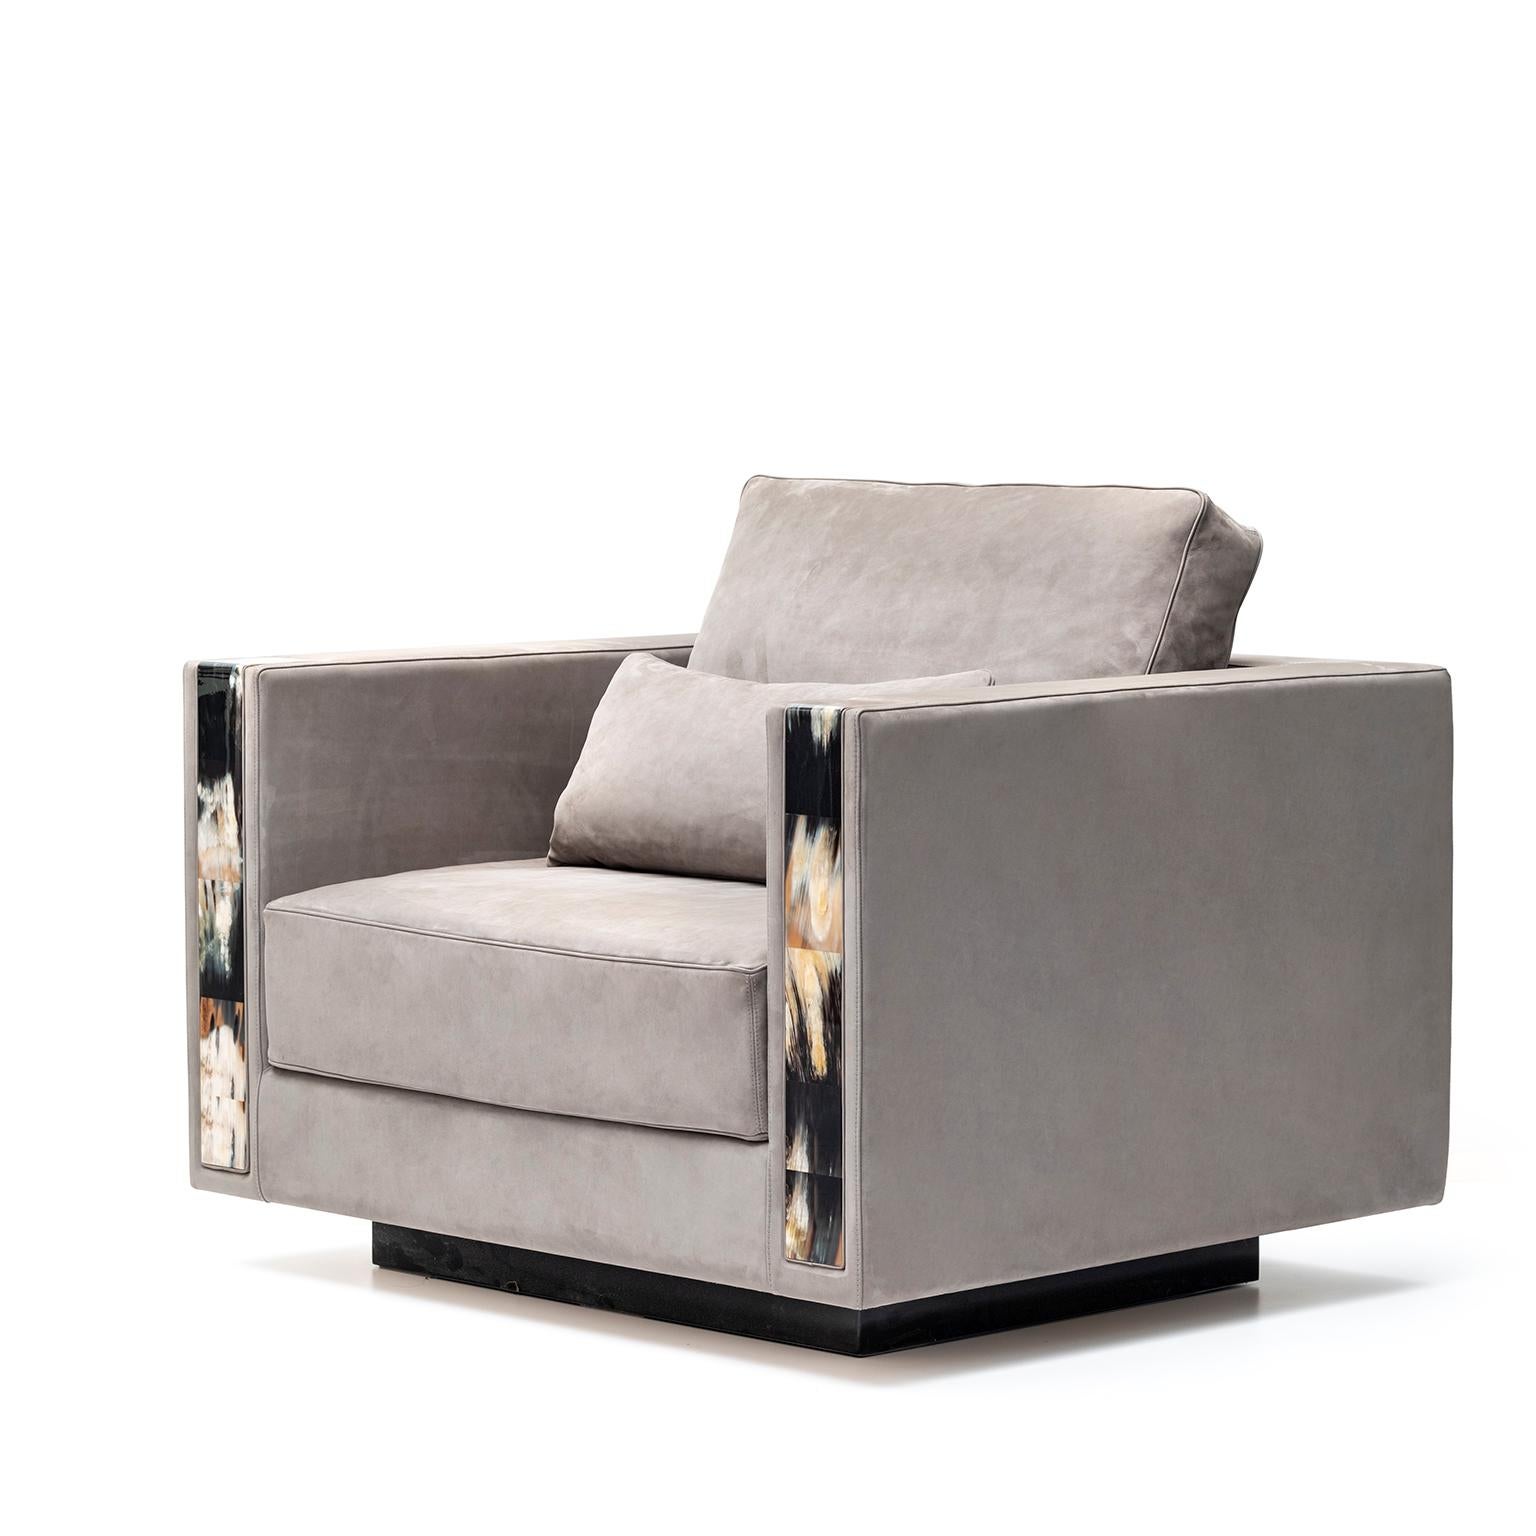 Der exquisite und imposante Sessel Zeus zeichnet sich durch seinen modernen, klassischen Stil, seine großzügigen Proportionen und seinen hohen Komfort aus. Das Design steht auf einem Holzsockel mit hochglanzpolierter schwarzer Oberfläche und wird in